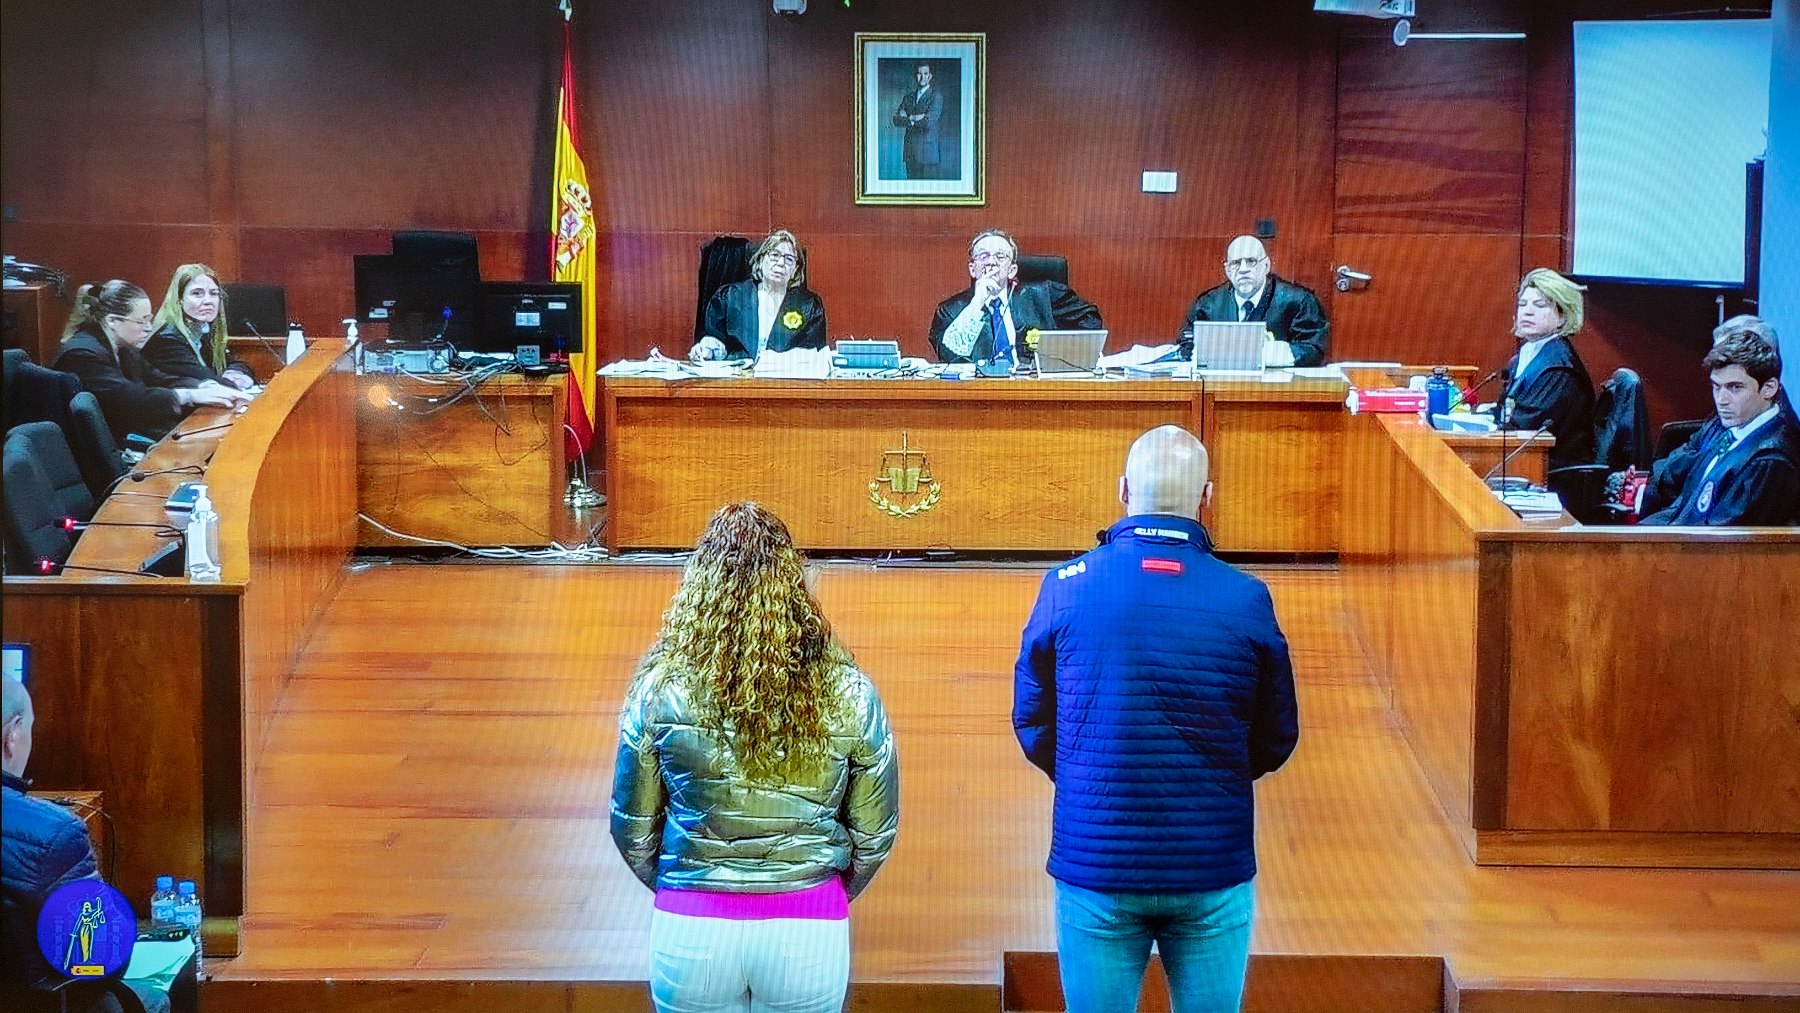 Constantin Dumitru y Priscila Lara Guevara en la Audiencia Provincial de Cáceres (Foto: Europa Press – Carlos Criado).